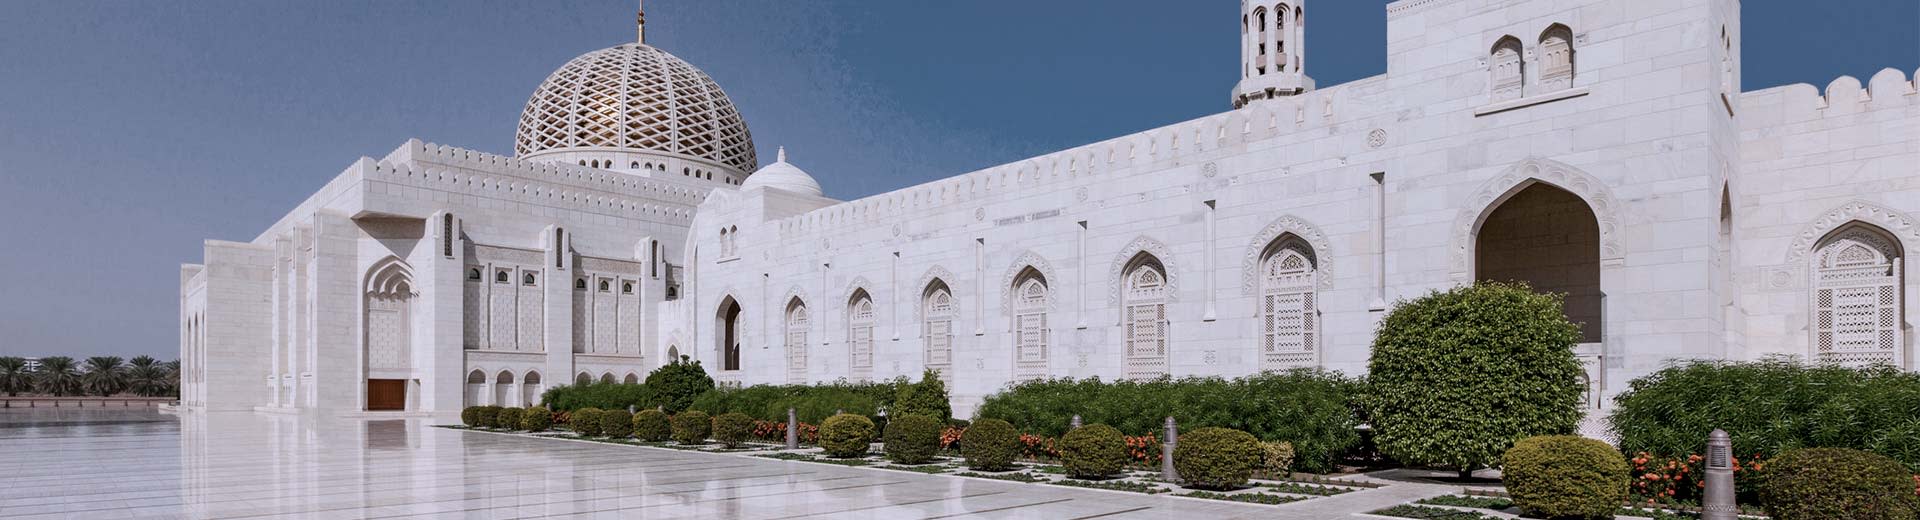 马斯喀特晴朗的一天，一座古老的清真寺。